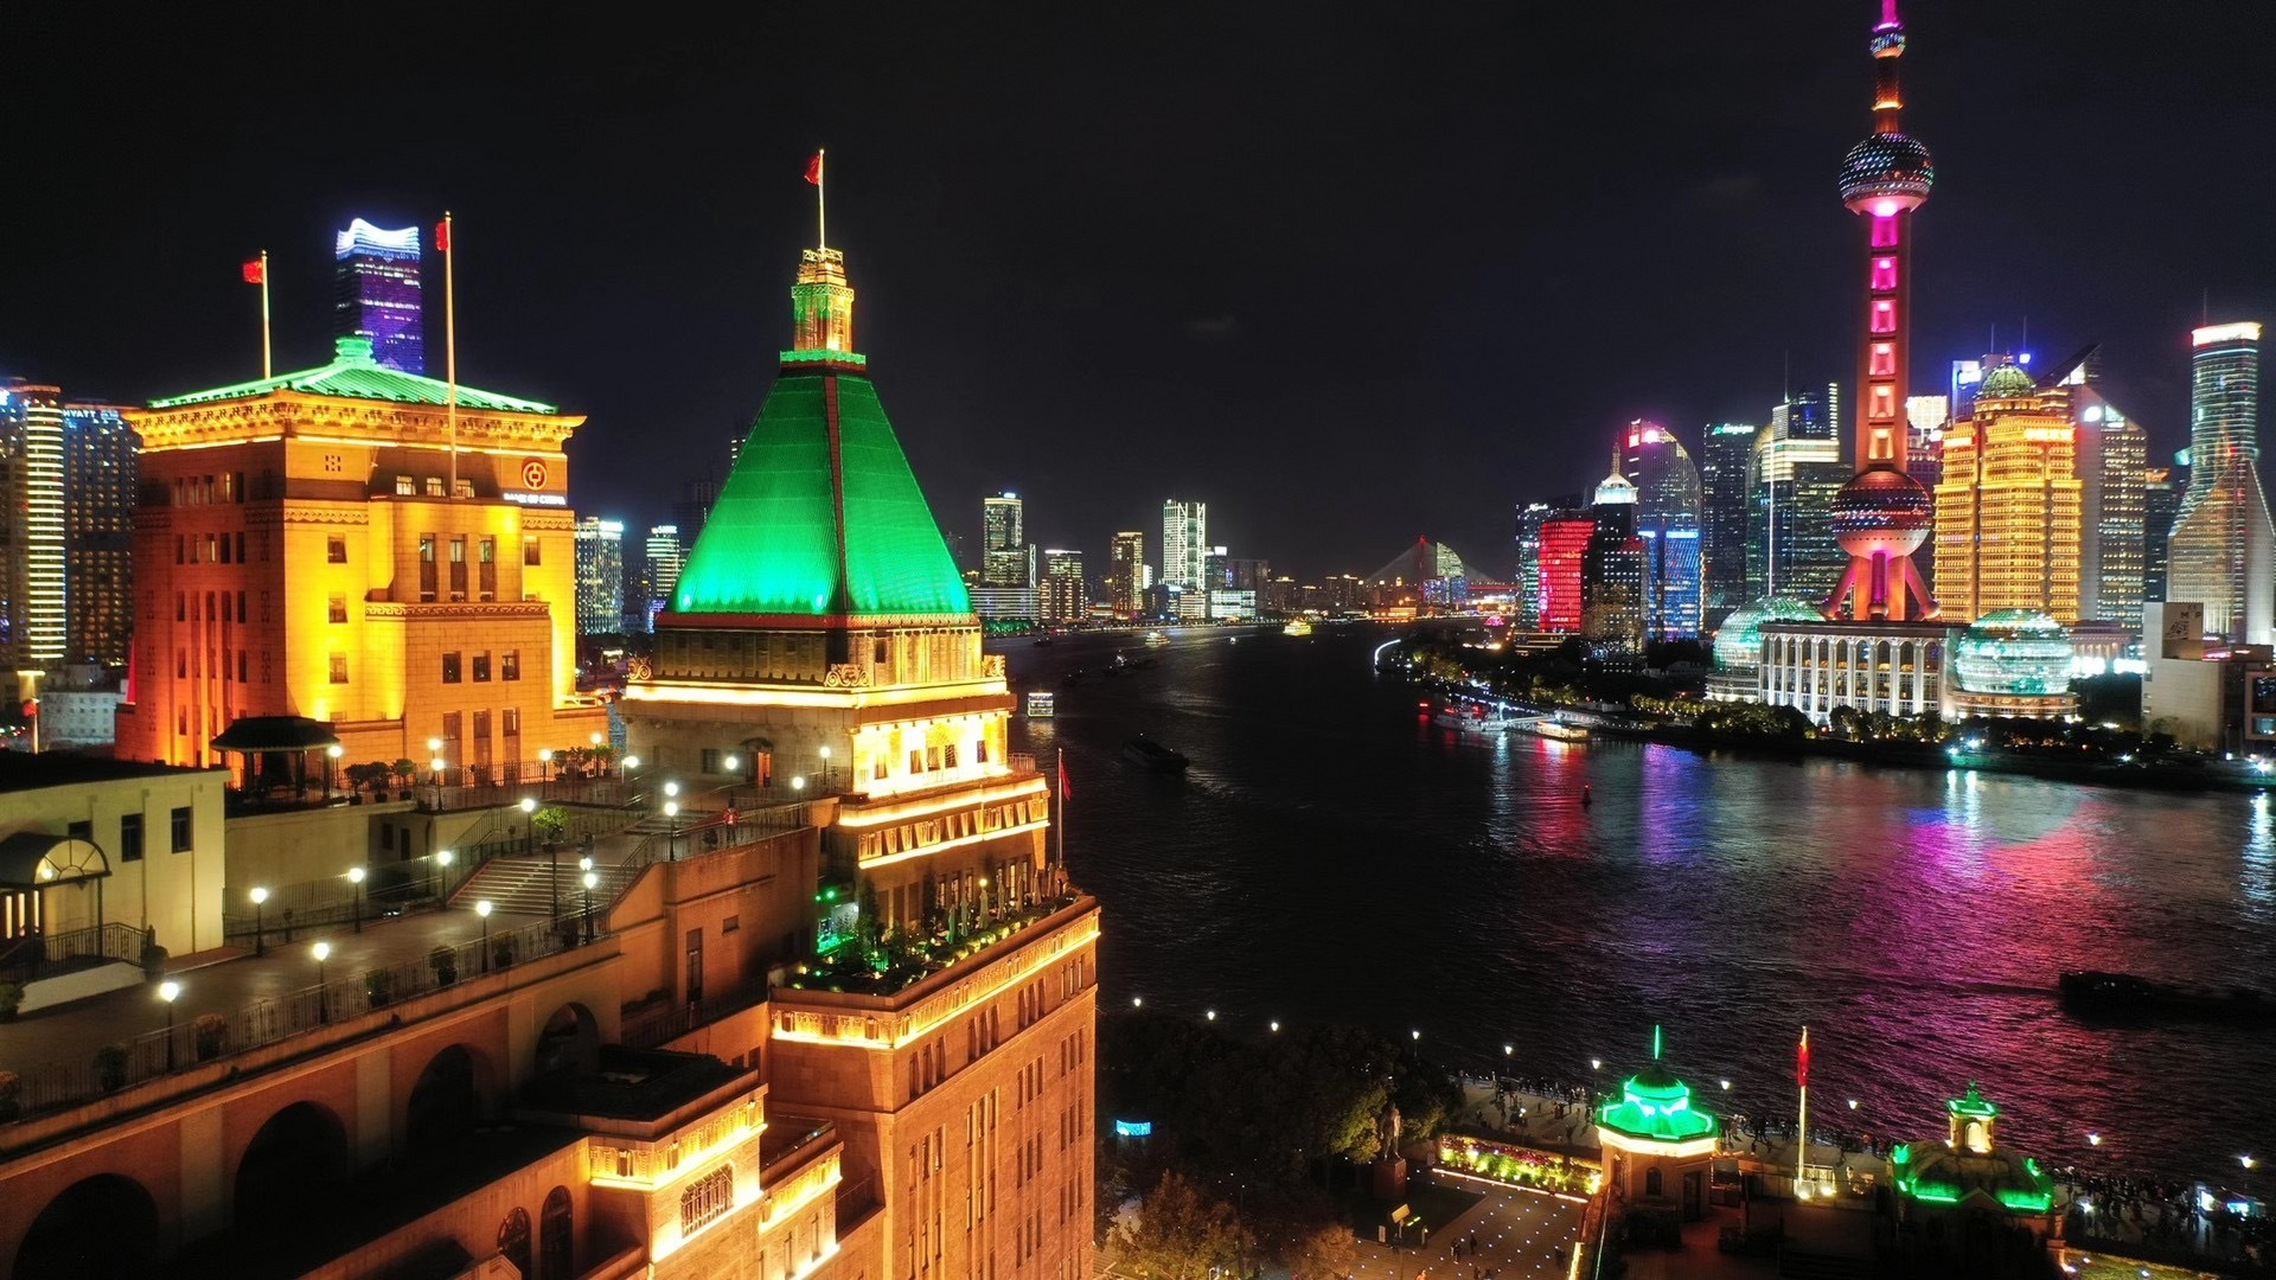 上海和平饭店夜景图片